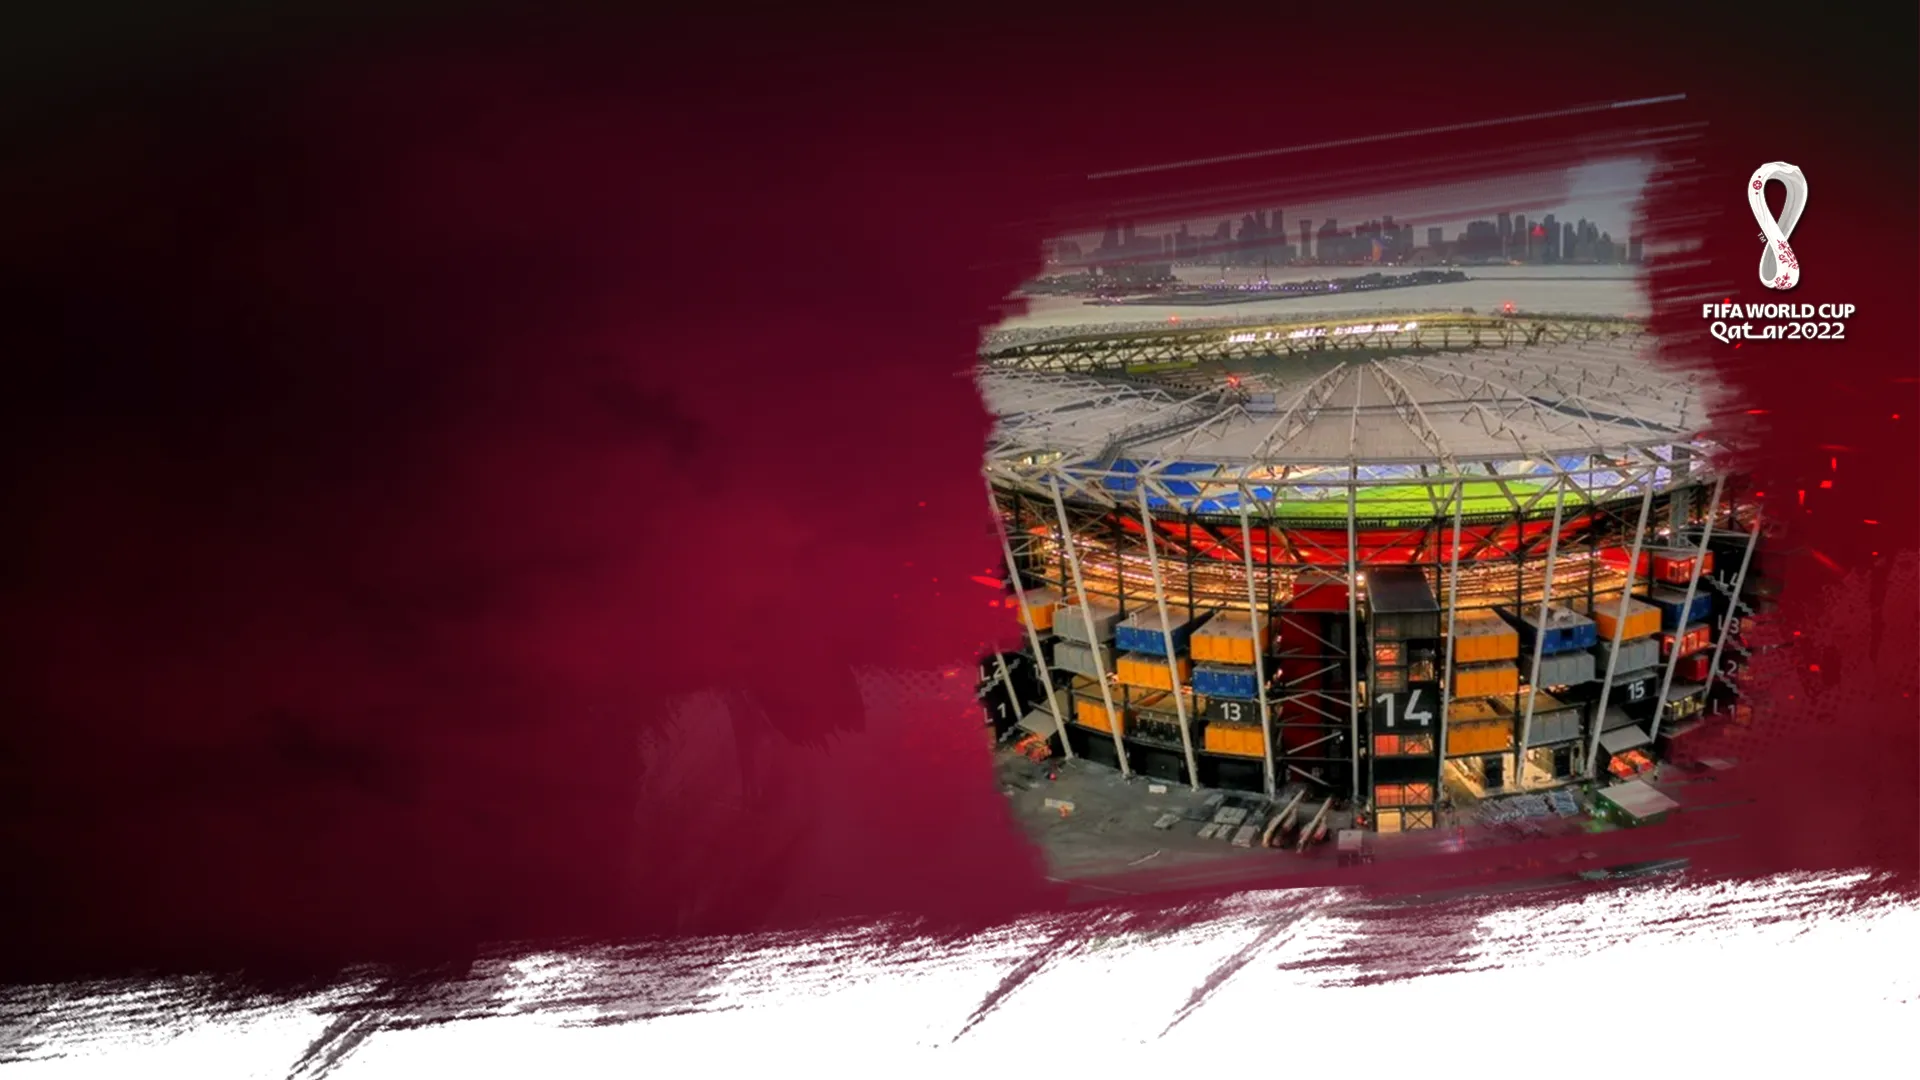 Sân Vận Động 974 - Sân World Cup Đặc Biệt Được Xây Dựng Bằng Container | Đường Đến World Cup 2022